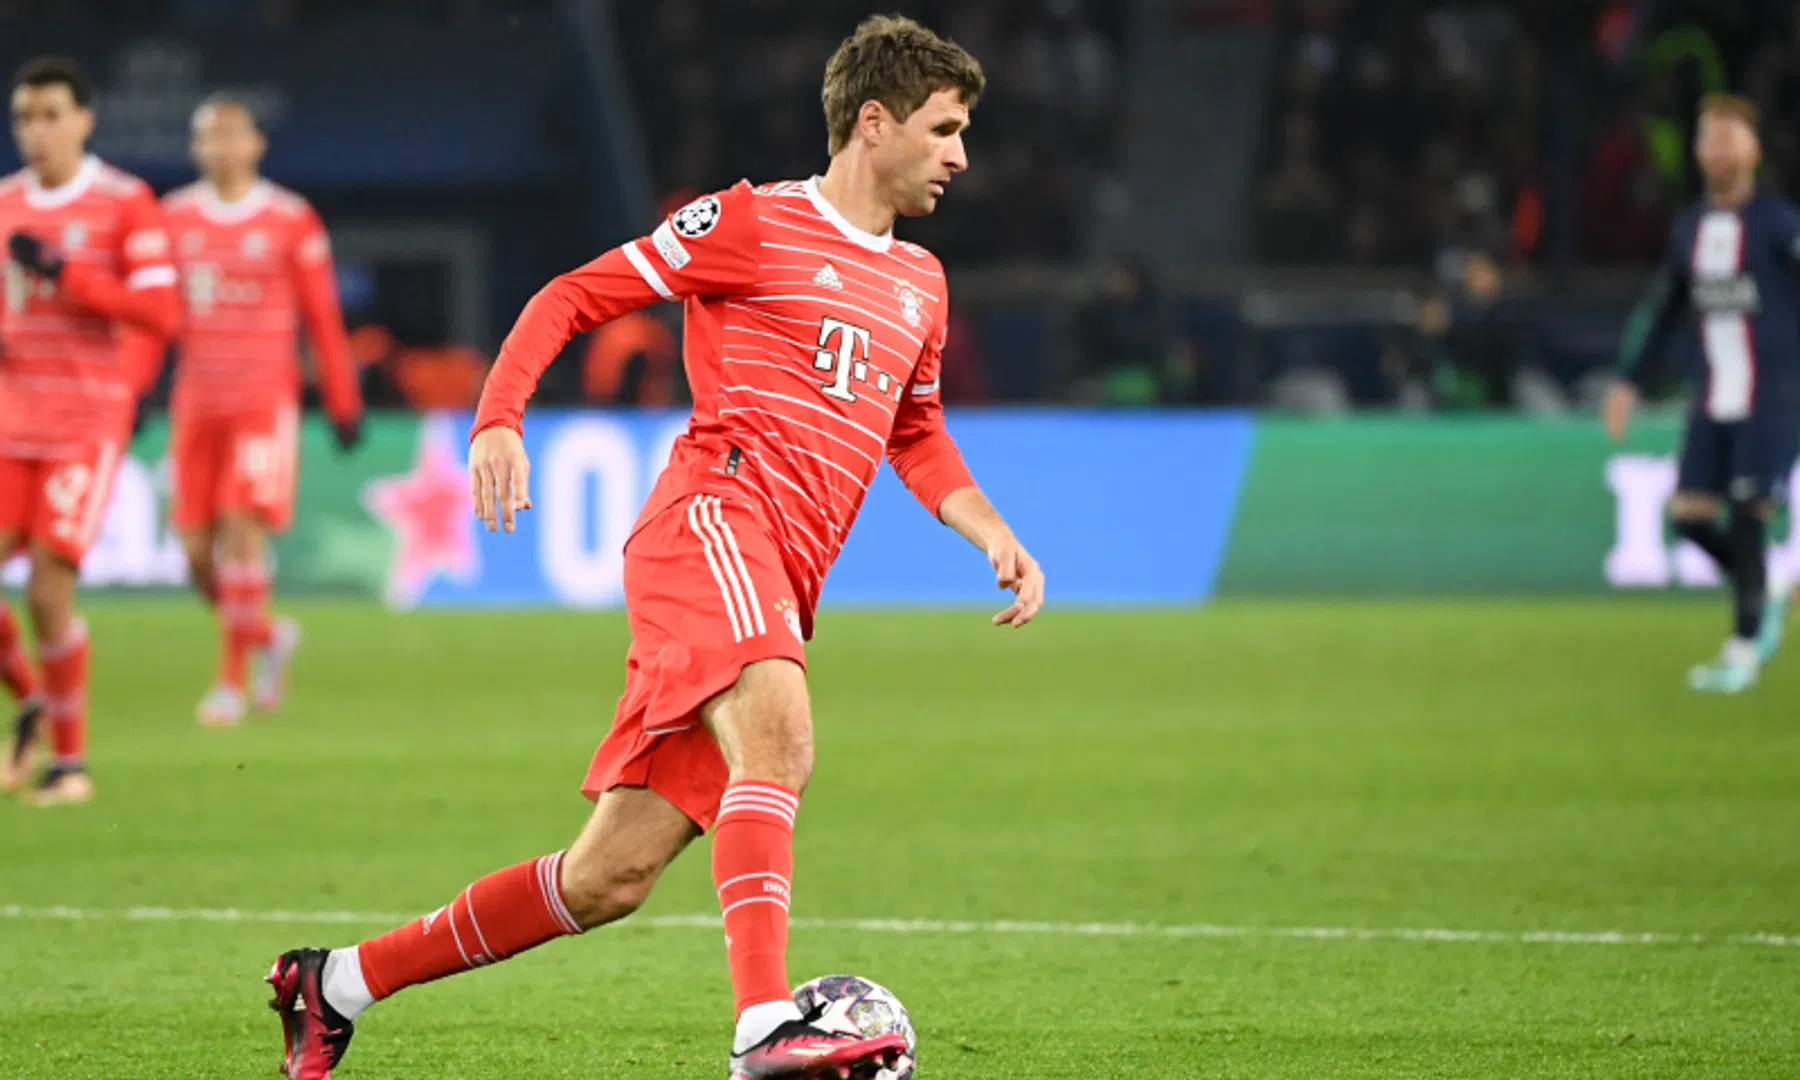 Bayern heeft plan tegen PSG-ster: 'Als het werkt, zal hij weinig plezier hebben'